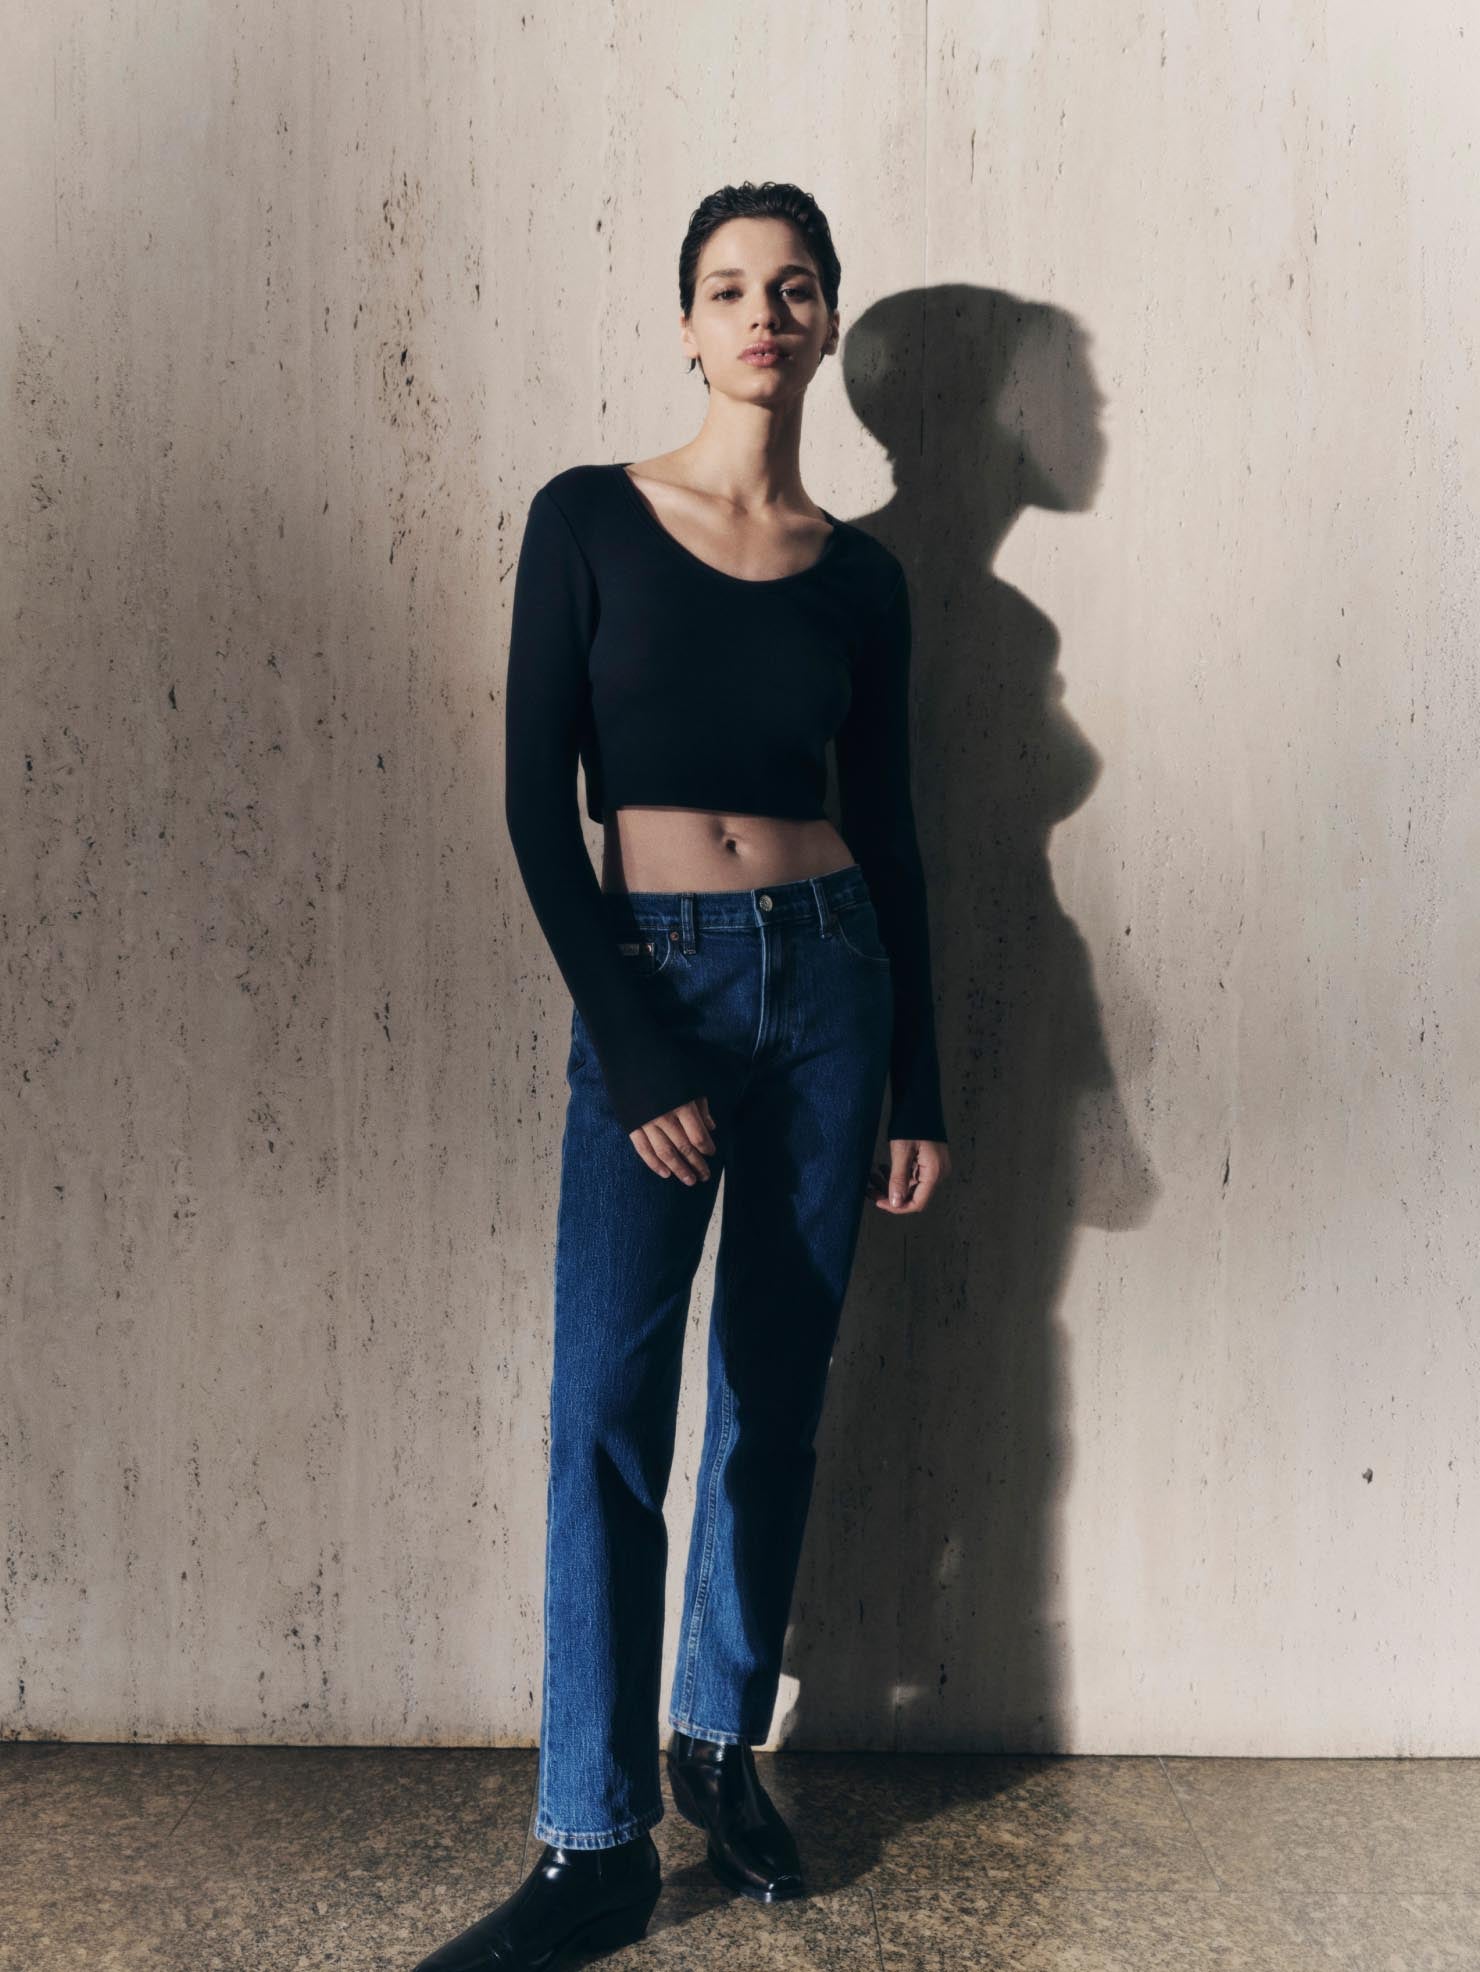 Original Ultra High Straight Fit Indigo Jeans | Calvin Klein